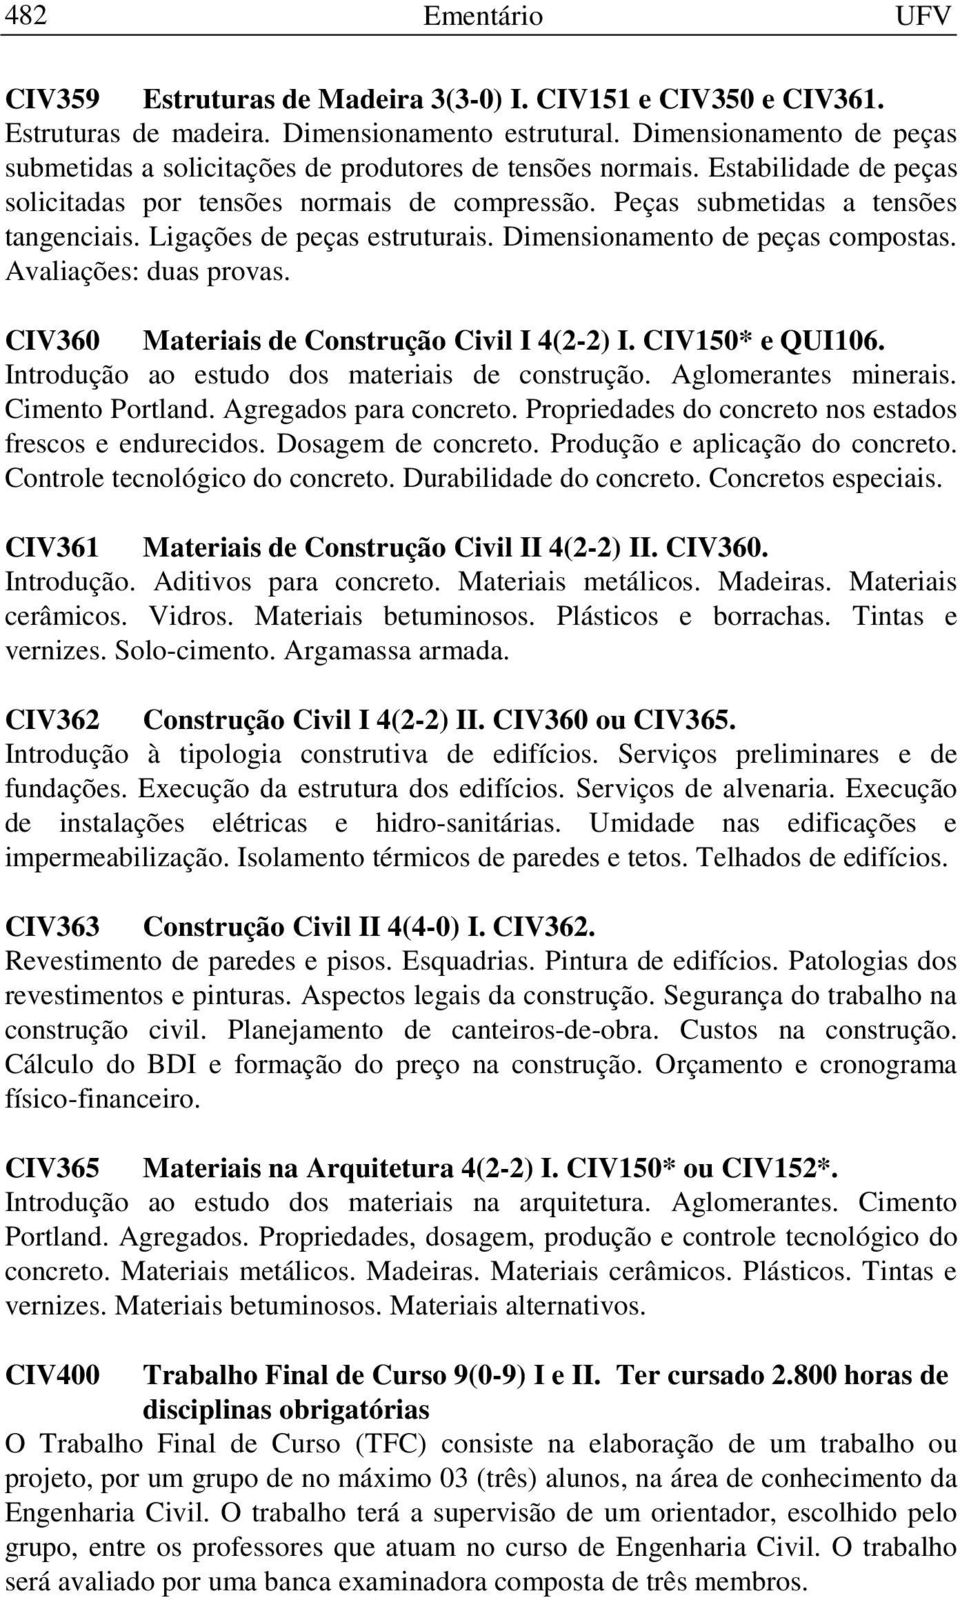 Ligações de peças estruturais. Dimensionamento de peças compostas. Avaliações: duas provas. CIV360 Materiais de Construção Civil I 4(2-2) I. CIV150* e QUI106.